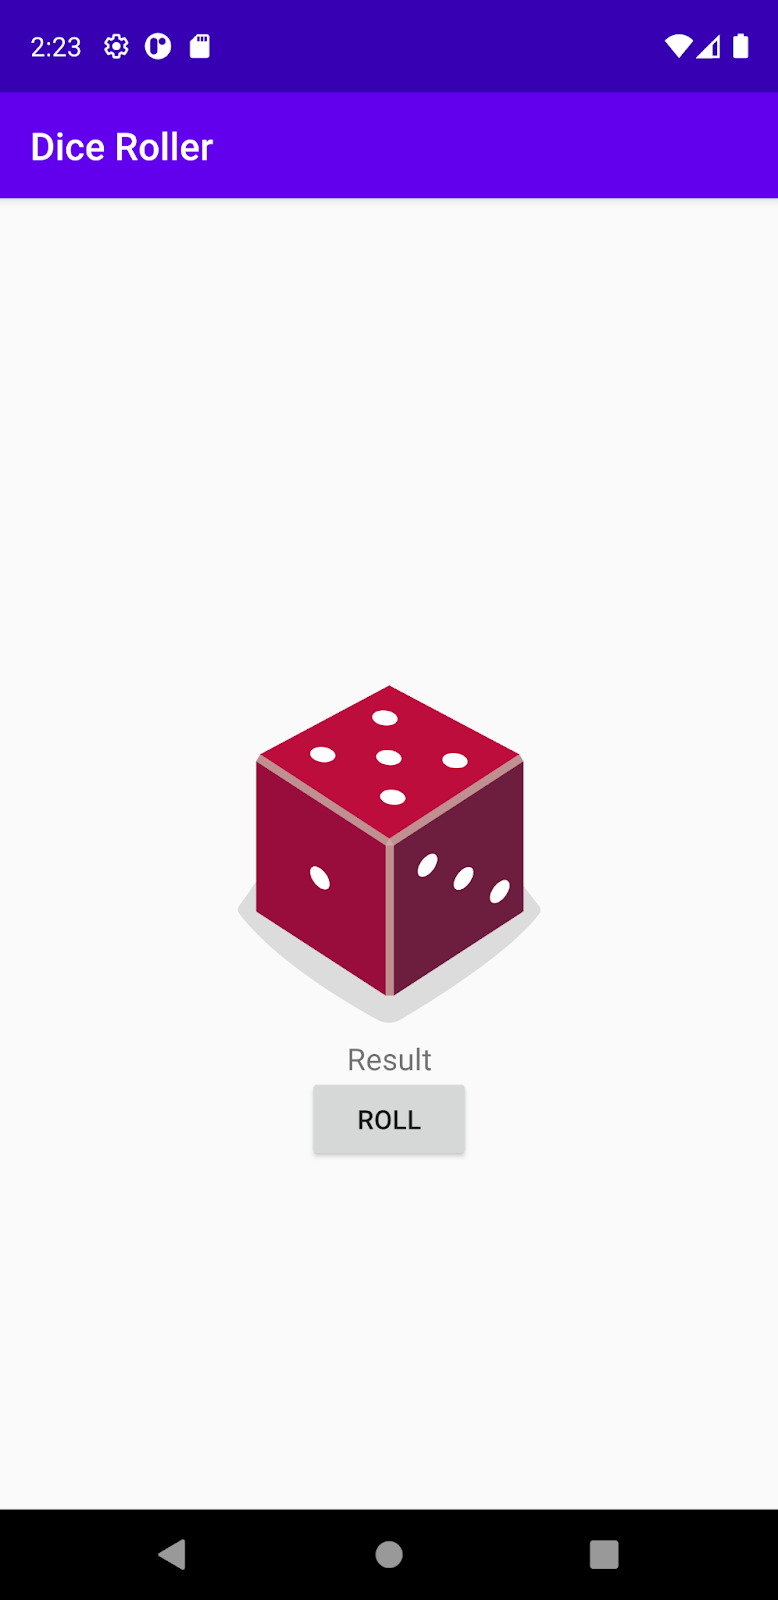 含有方塊的 DiceRoller 應用程式，方塊上顯示的「Result」(結果) 做為預留位置。